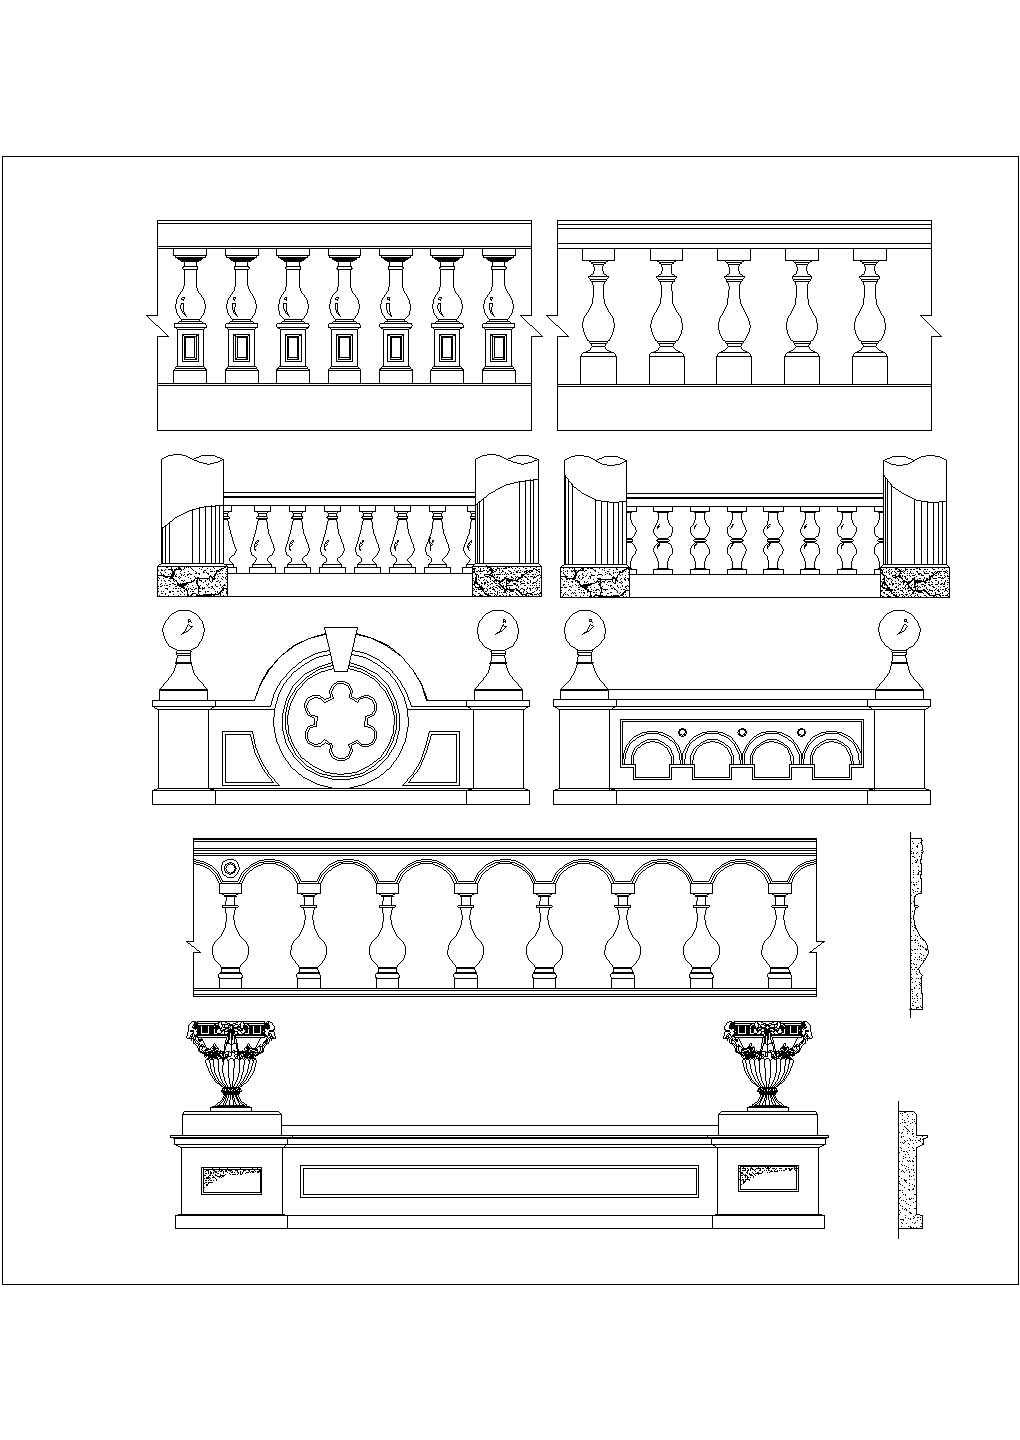 某11套欧式栏杆详图设计——全套建筑详图(含欧式栏杆安装应用示意图)